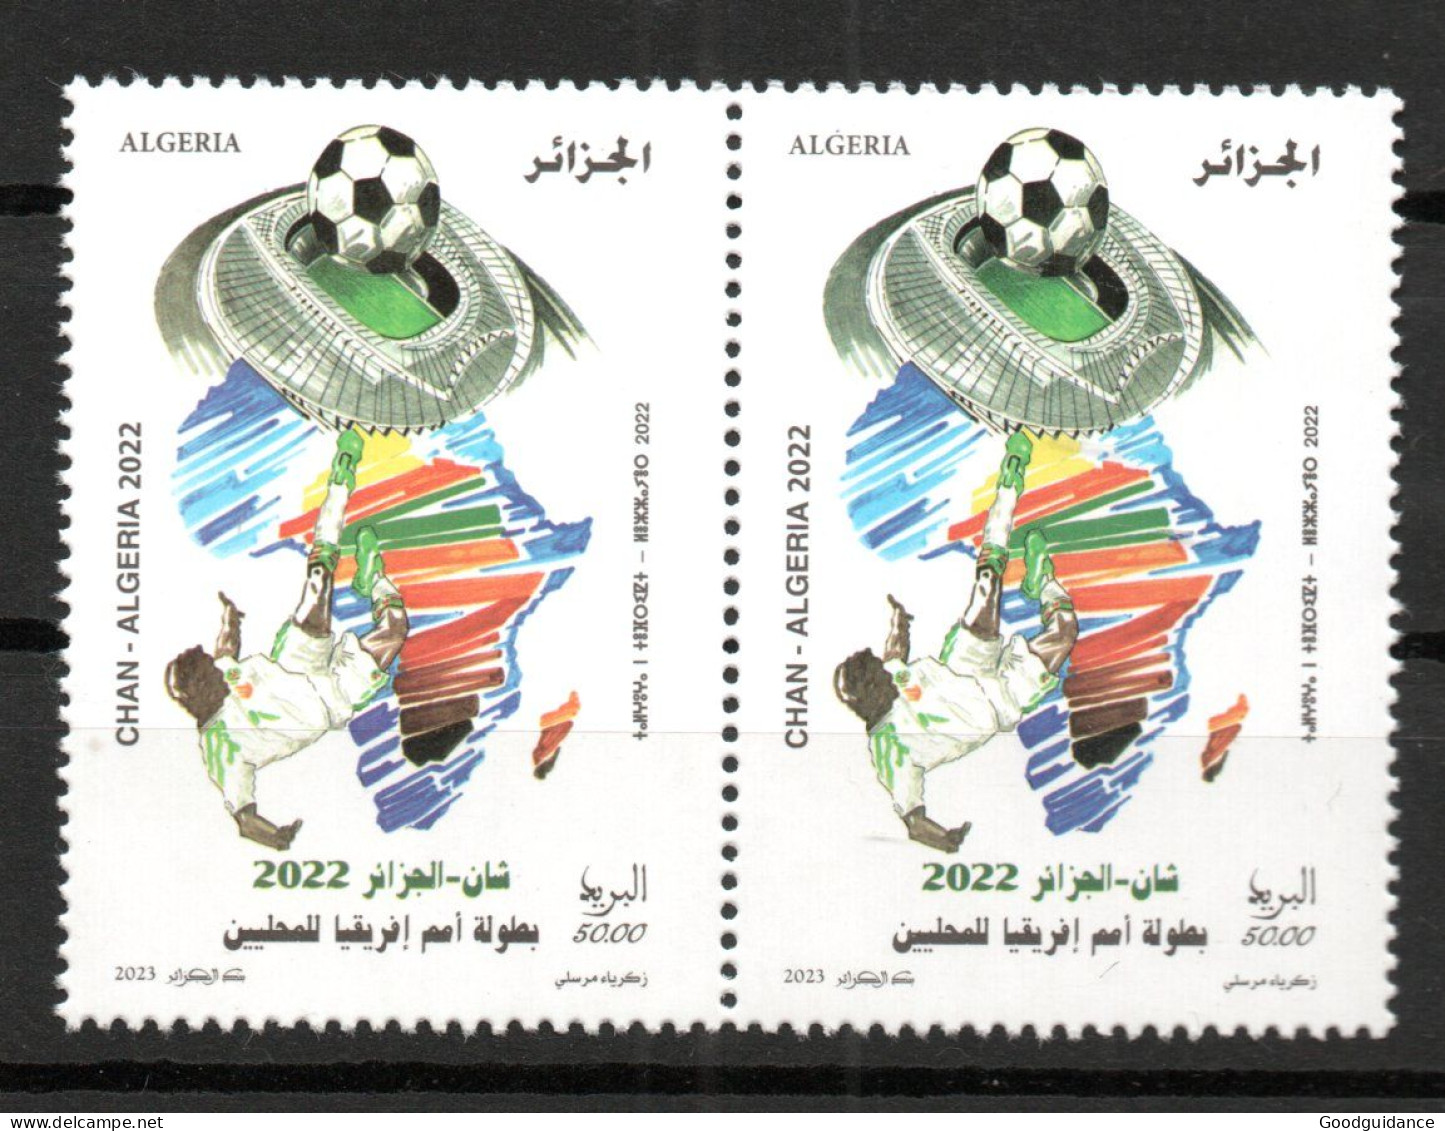 2023 - Algérie - La 7ème Coupe D’Afrique Des Nations De Football 2022- Stade - Carte - Paire - Série Complète 1v.MNH** - Africa Cup Of Nations